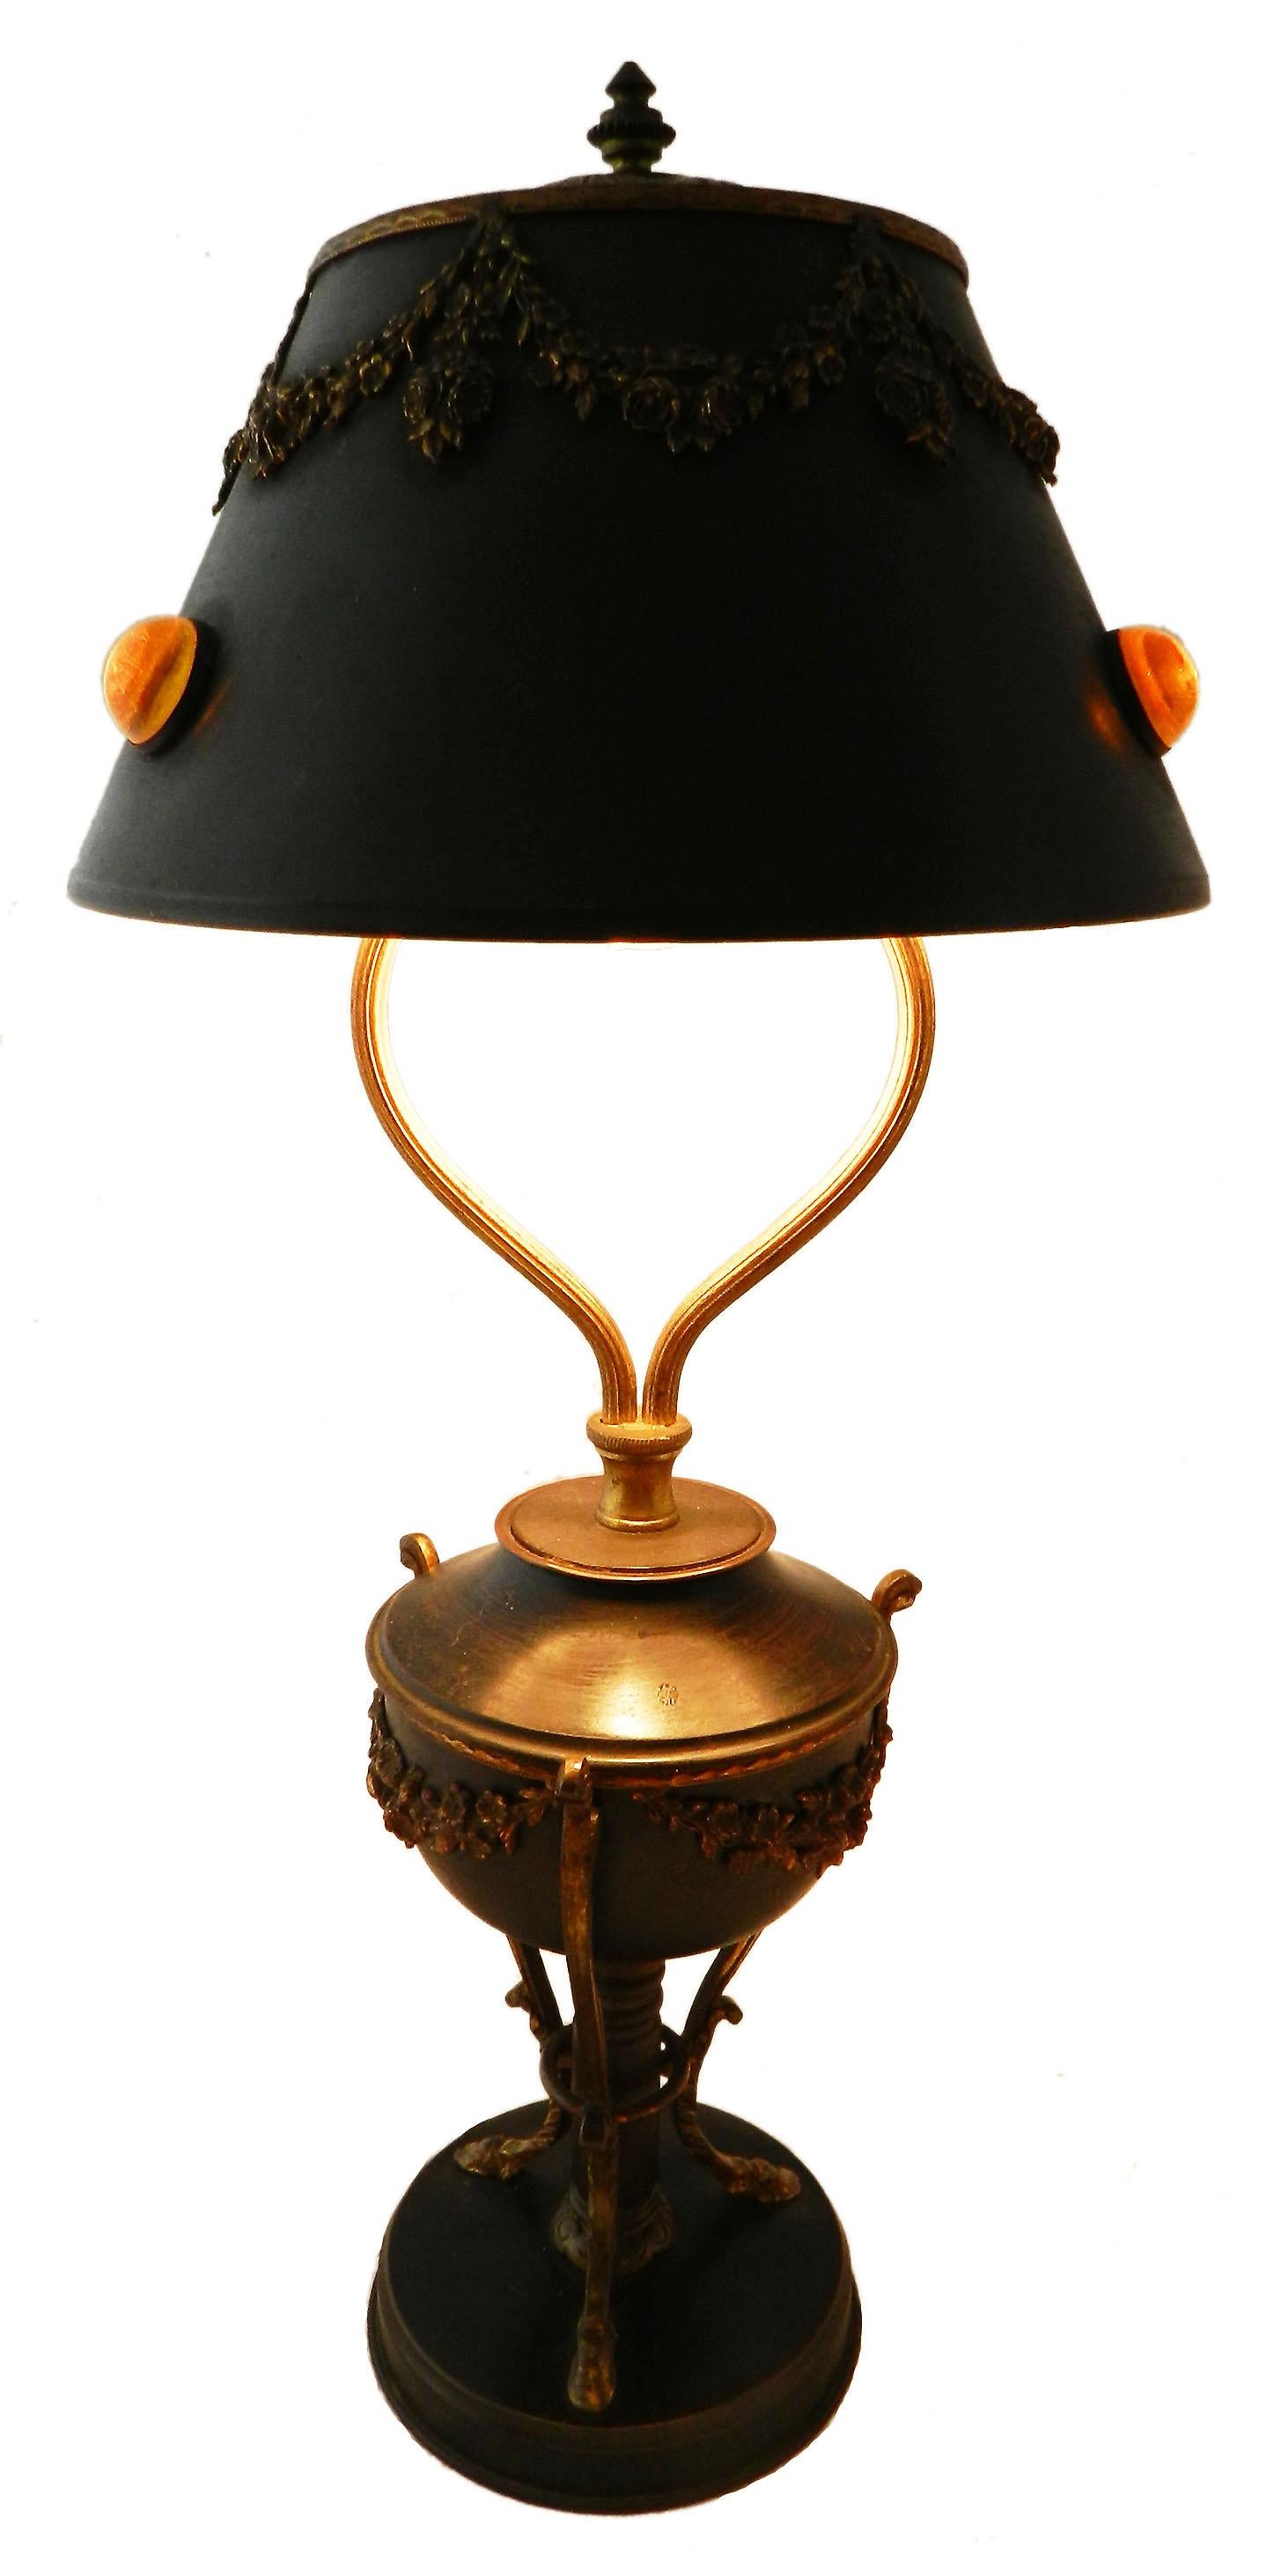 Belle époque Tischlampe Französisch Cabuchons Böhmisch, um 1890
Ungewöhnliche Lampe mit toller Patina
Guter antiker Zustand mit geringen Altersspuren
Diese wird neu verkabelt, um entweder den US-Normen oder den britischen und EU-Normen zu